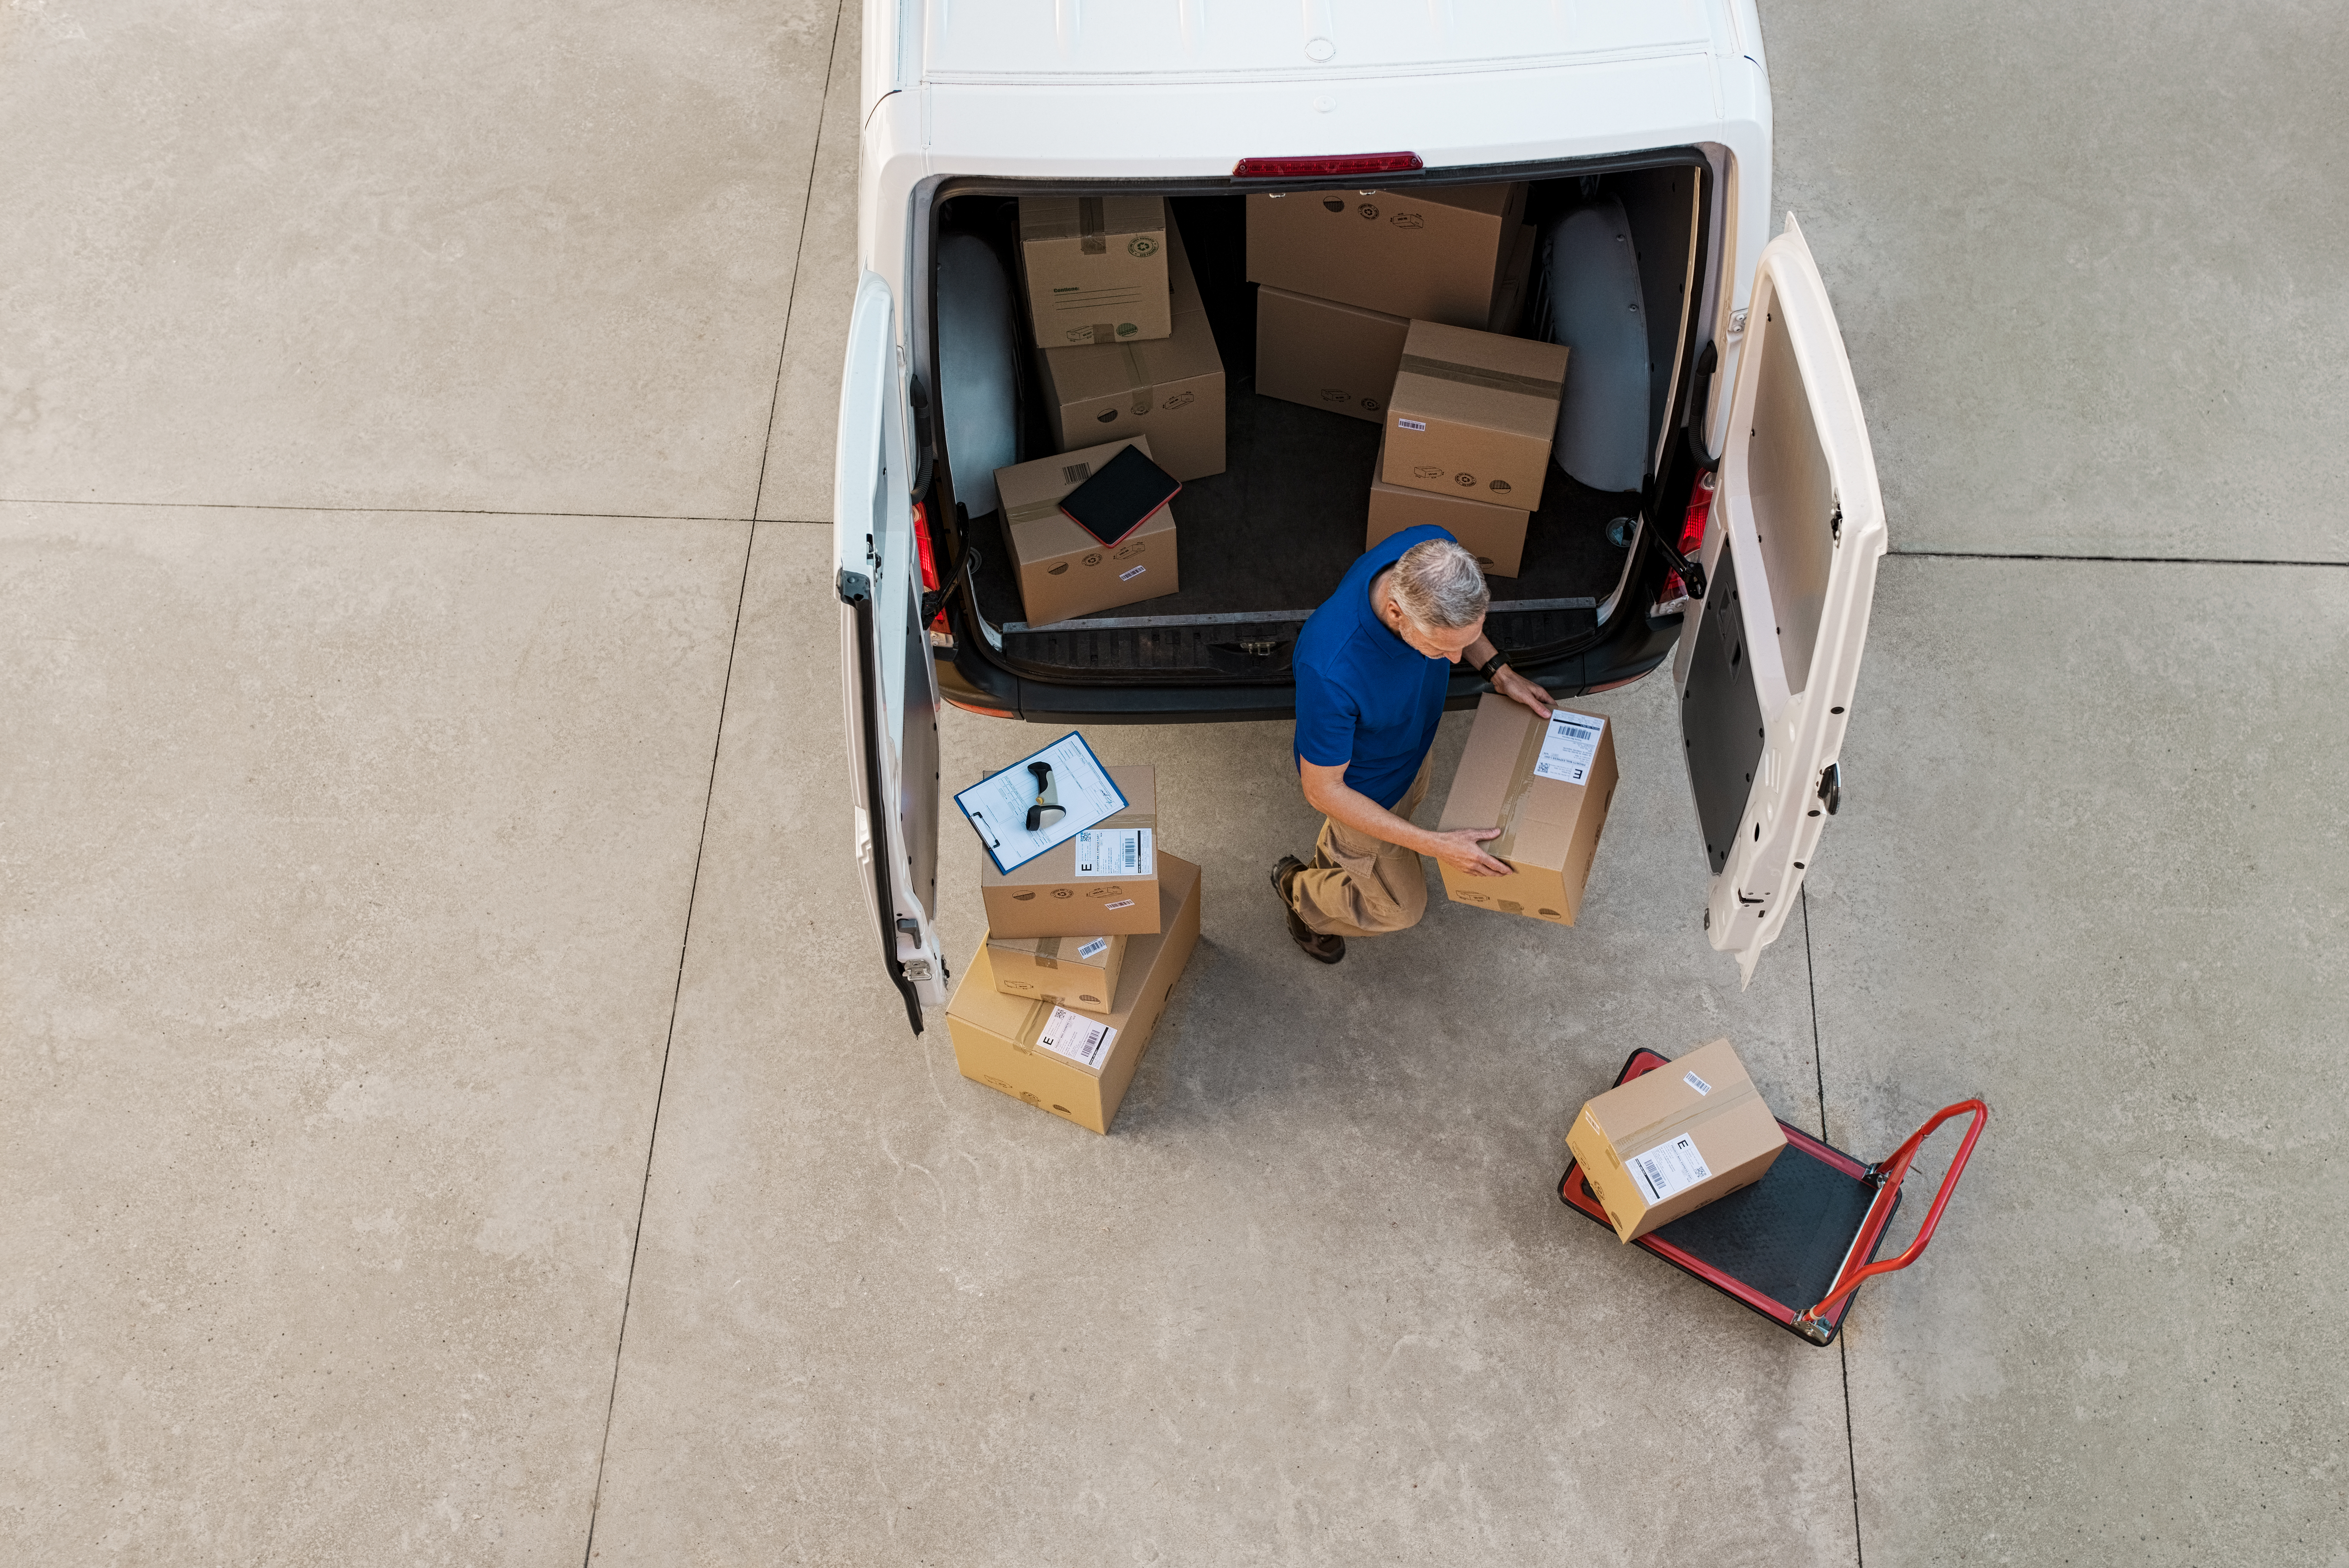 courier-delivering-parcel-PQZHBGE